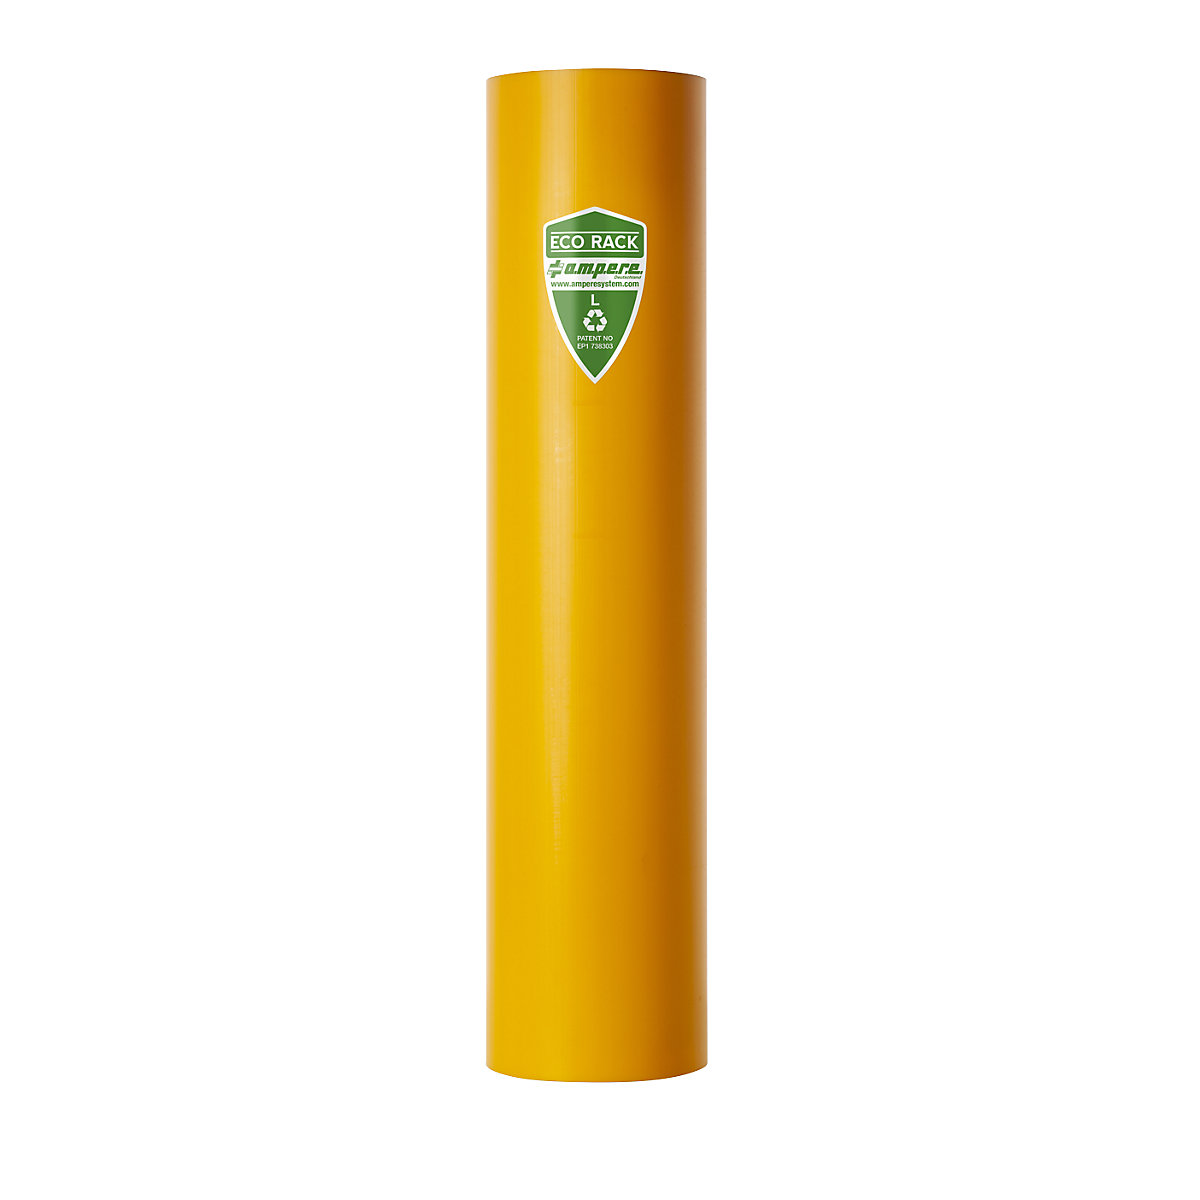 Regalanfahrschutz Ampere, aus recyceltem Kunststoff, Regalständerbreite 101 – 110 mm-11